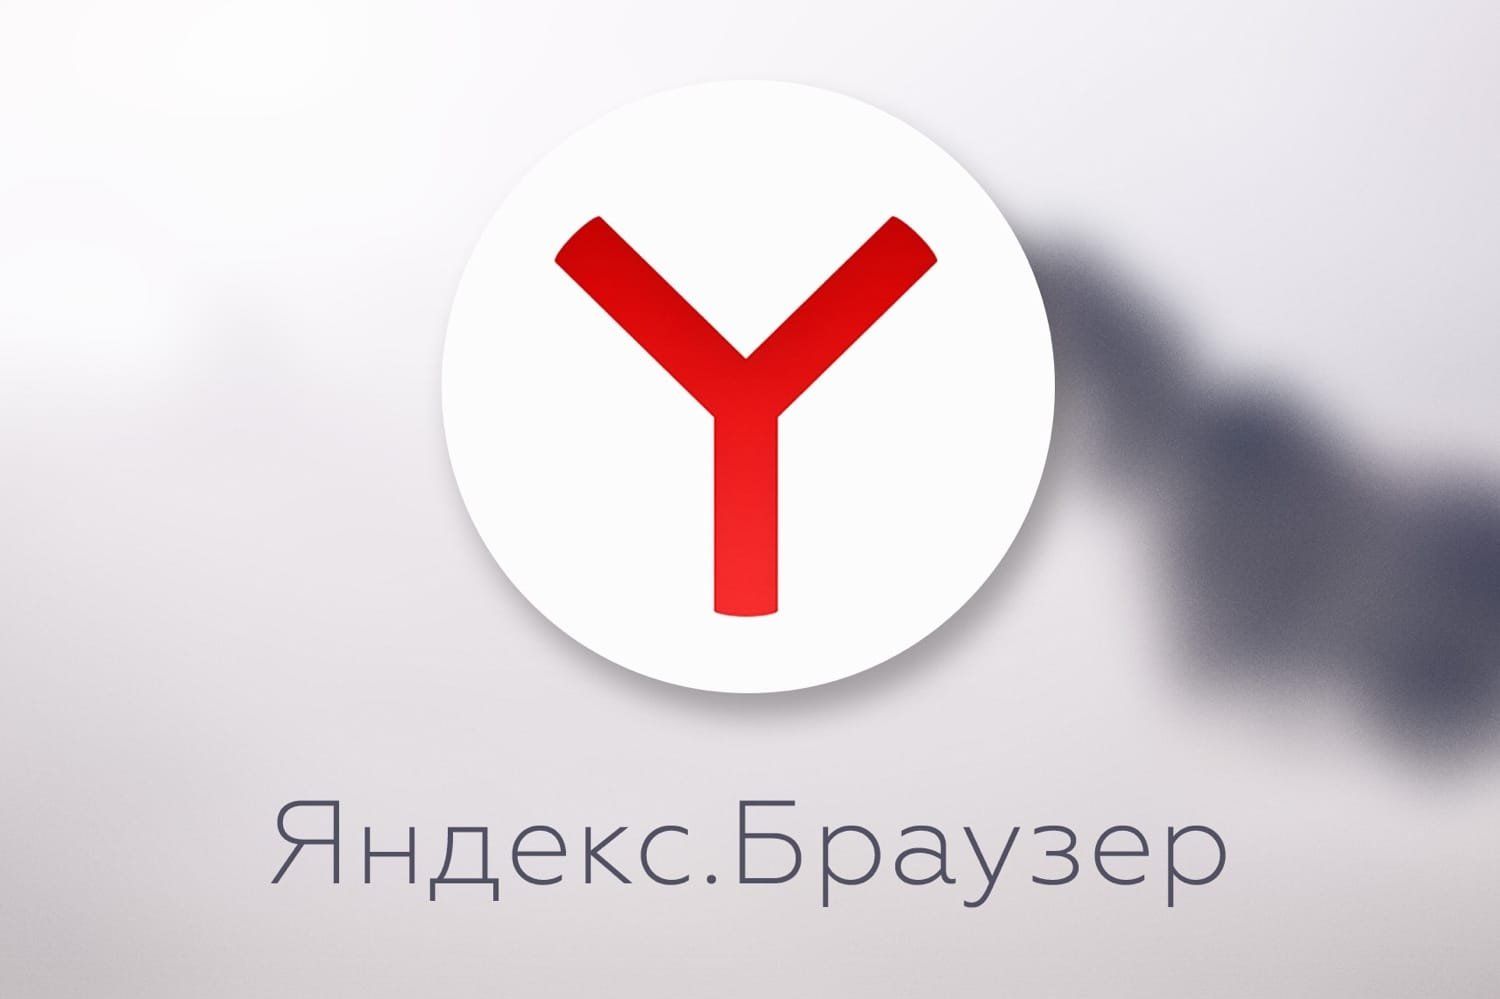 Яндекс заговорил по-китайски